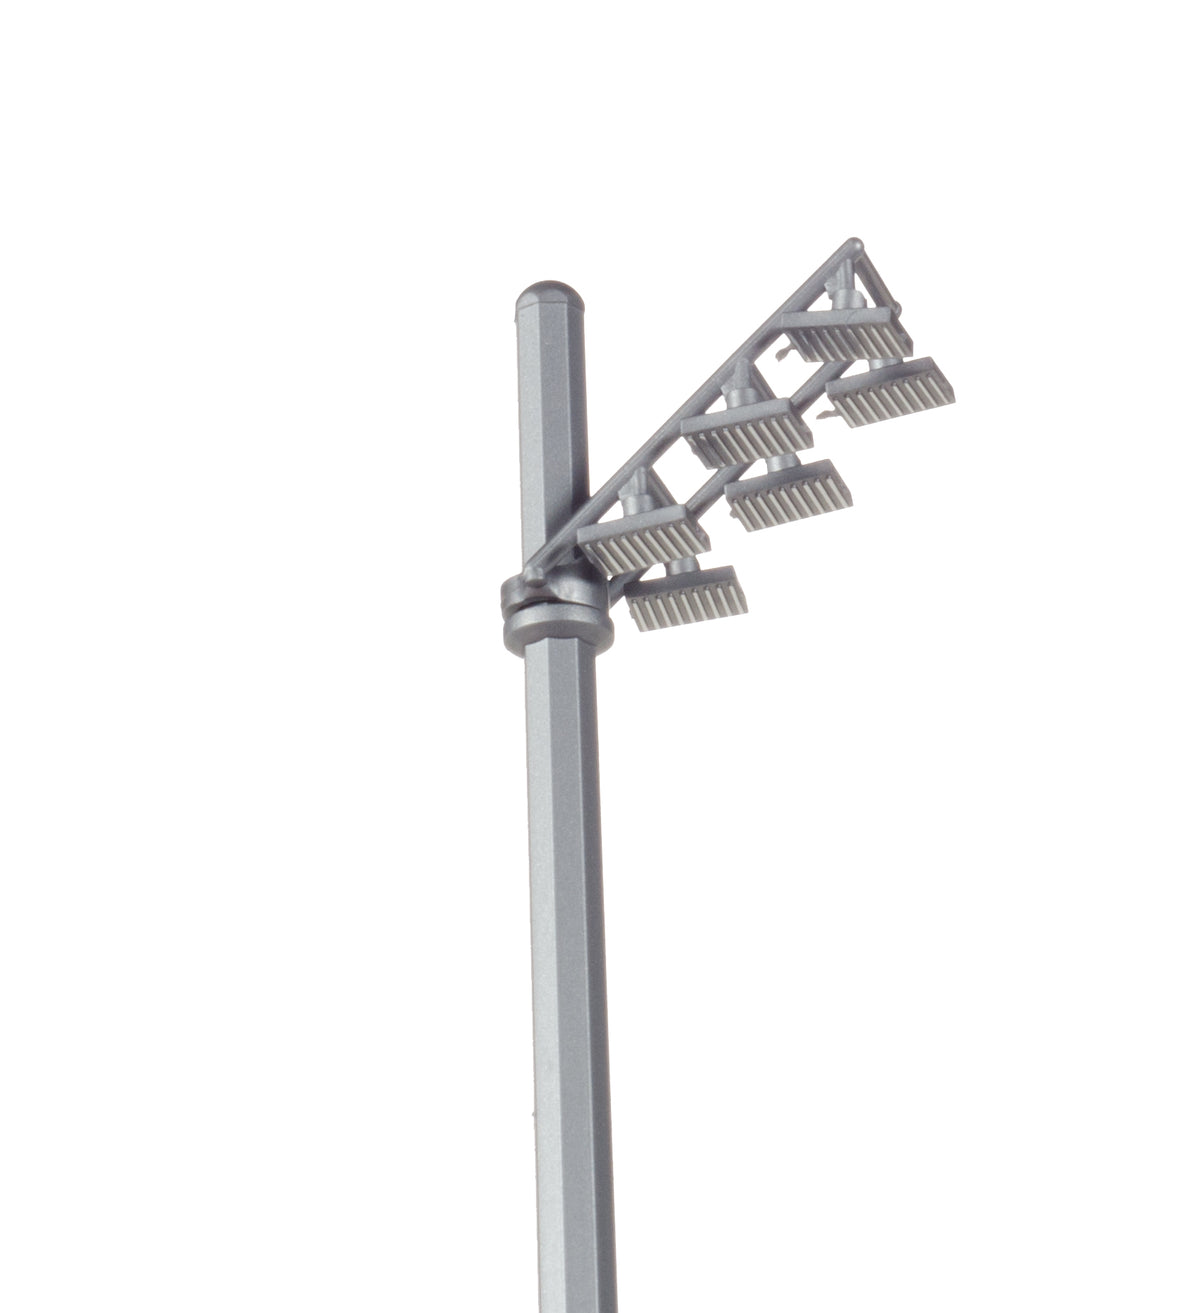 Scenix 空港ジオラマアクセサリー エプロンフラッドライト（照明塔）2本セット 1/200 ※プラ製・組立必要 [558754]